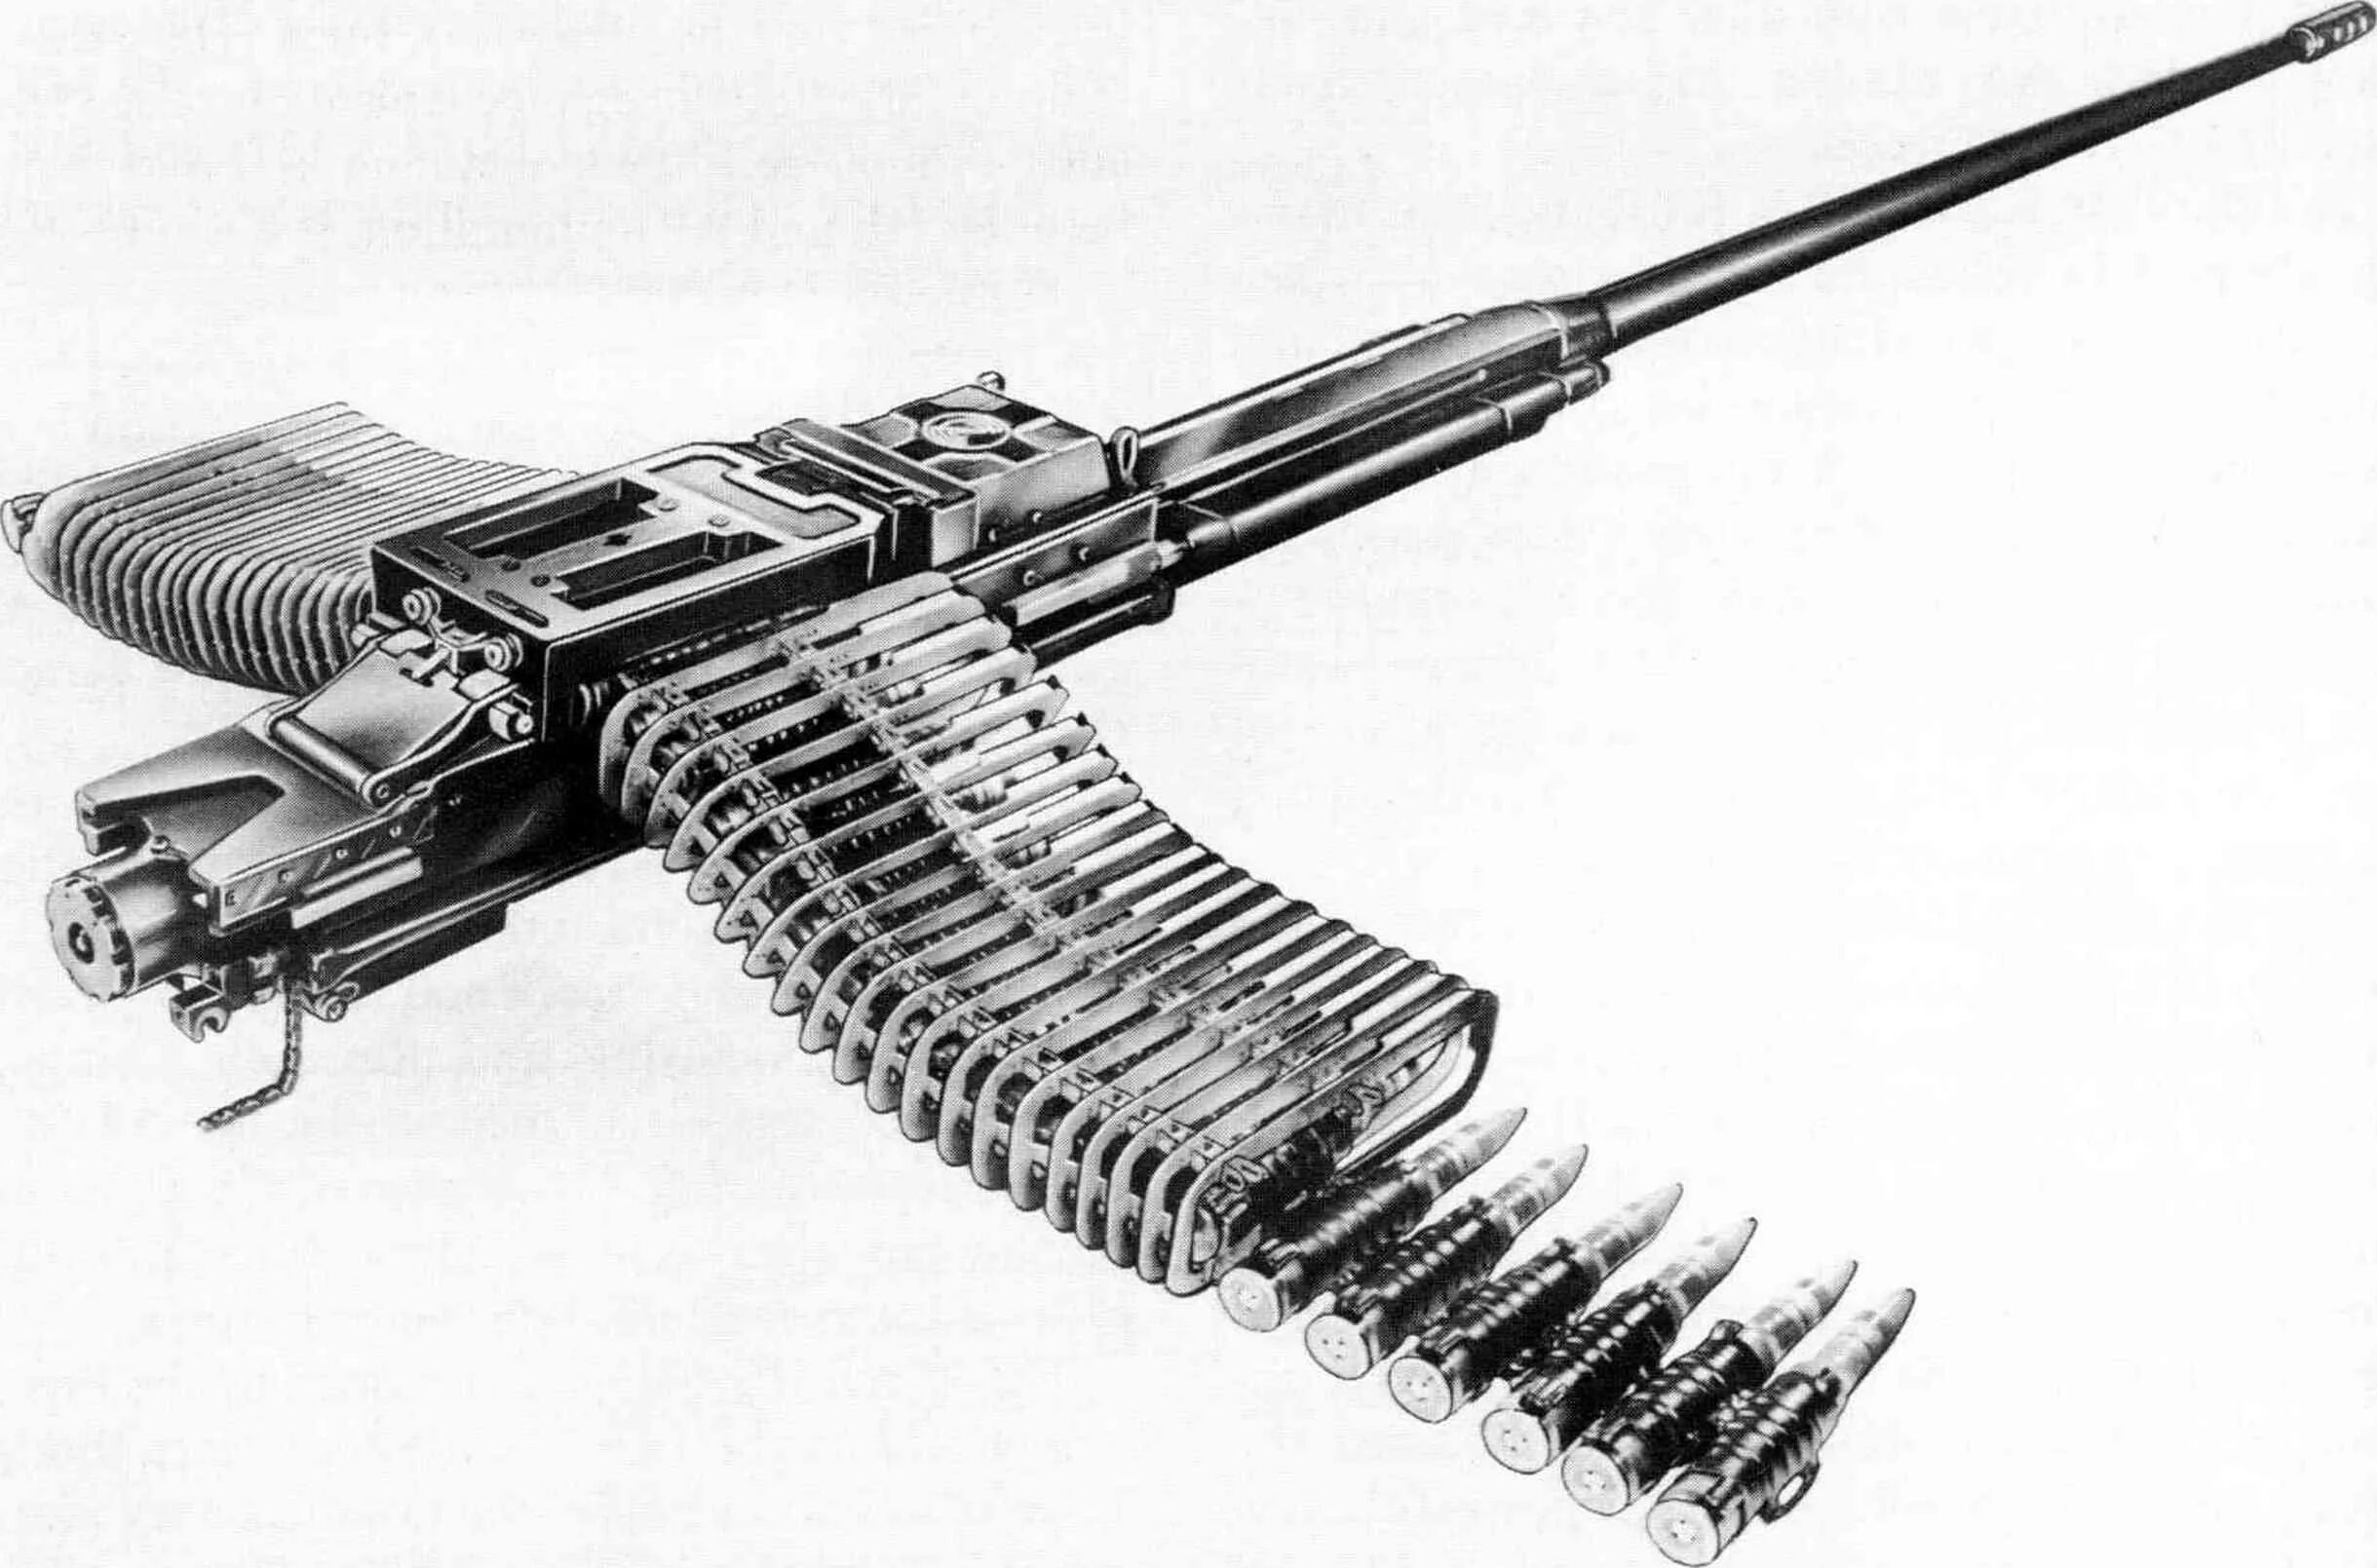 Крупнокалиберный пулемет CIS 50mg. M230 пулемет. CIS 50 MG пулемет. Крупнокалиберный пулемет MG 131. Бусти крупнокалиберный